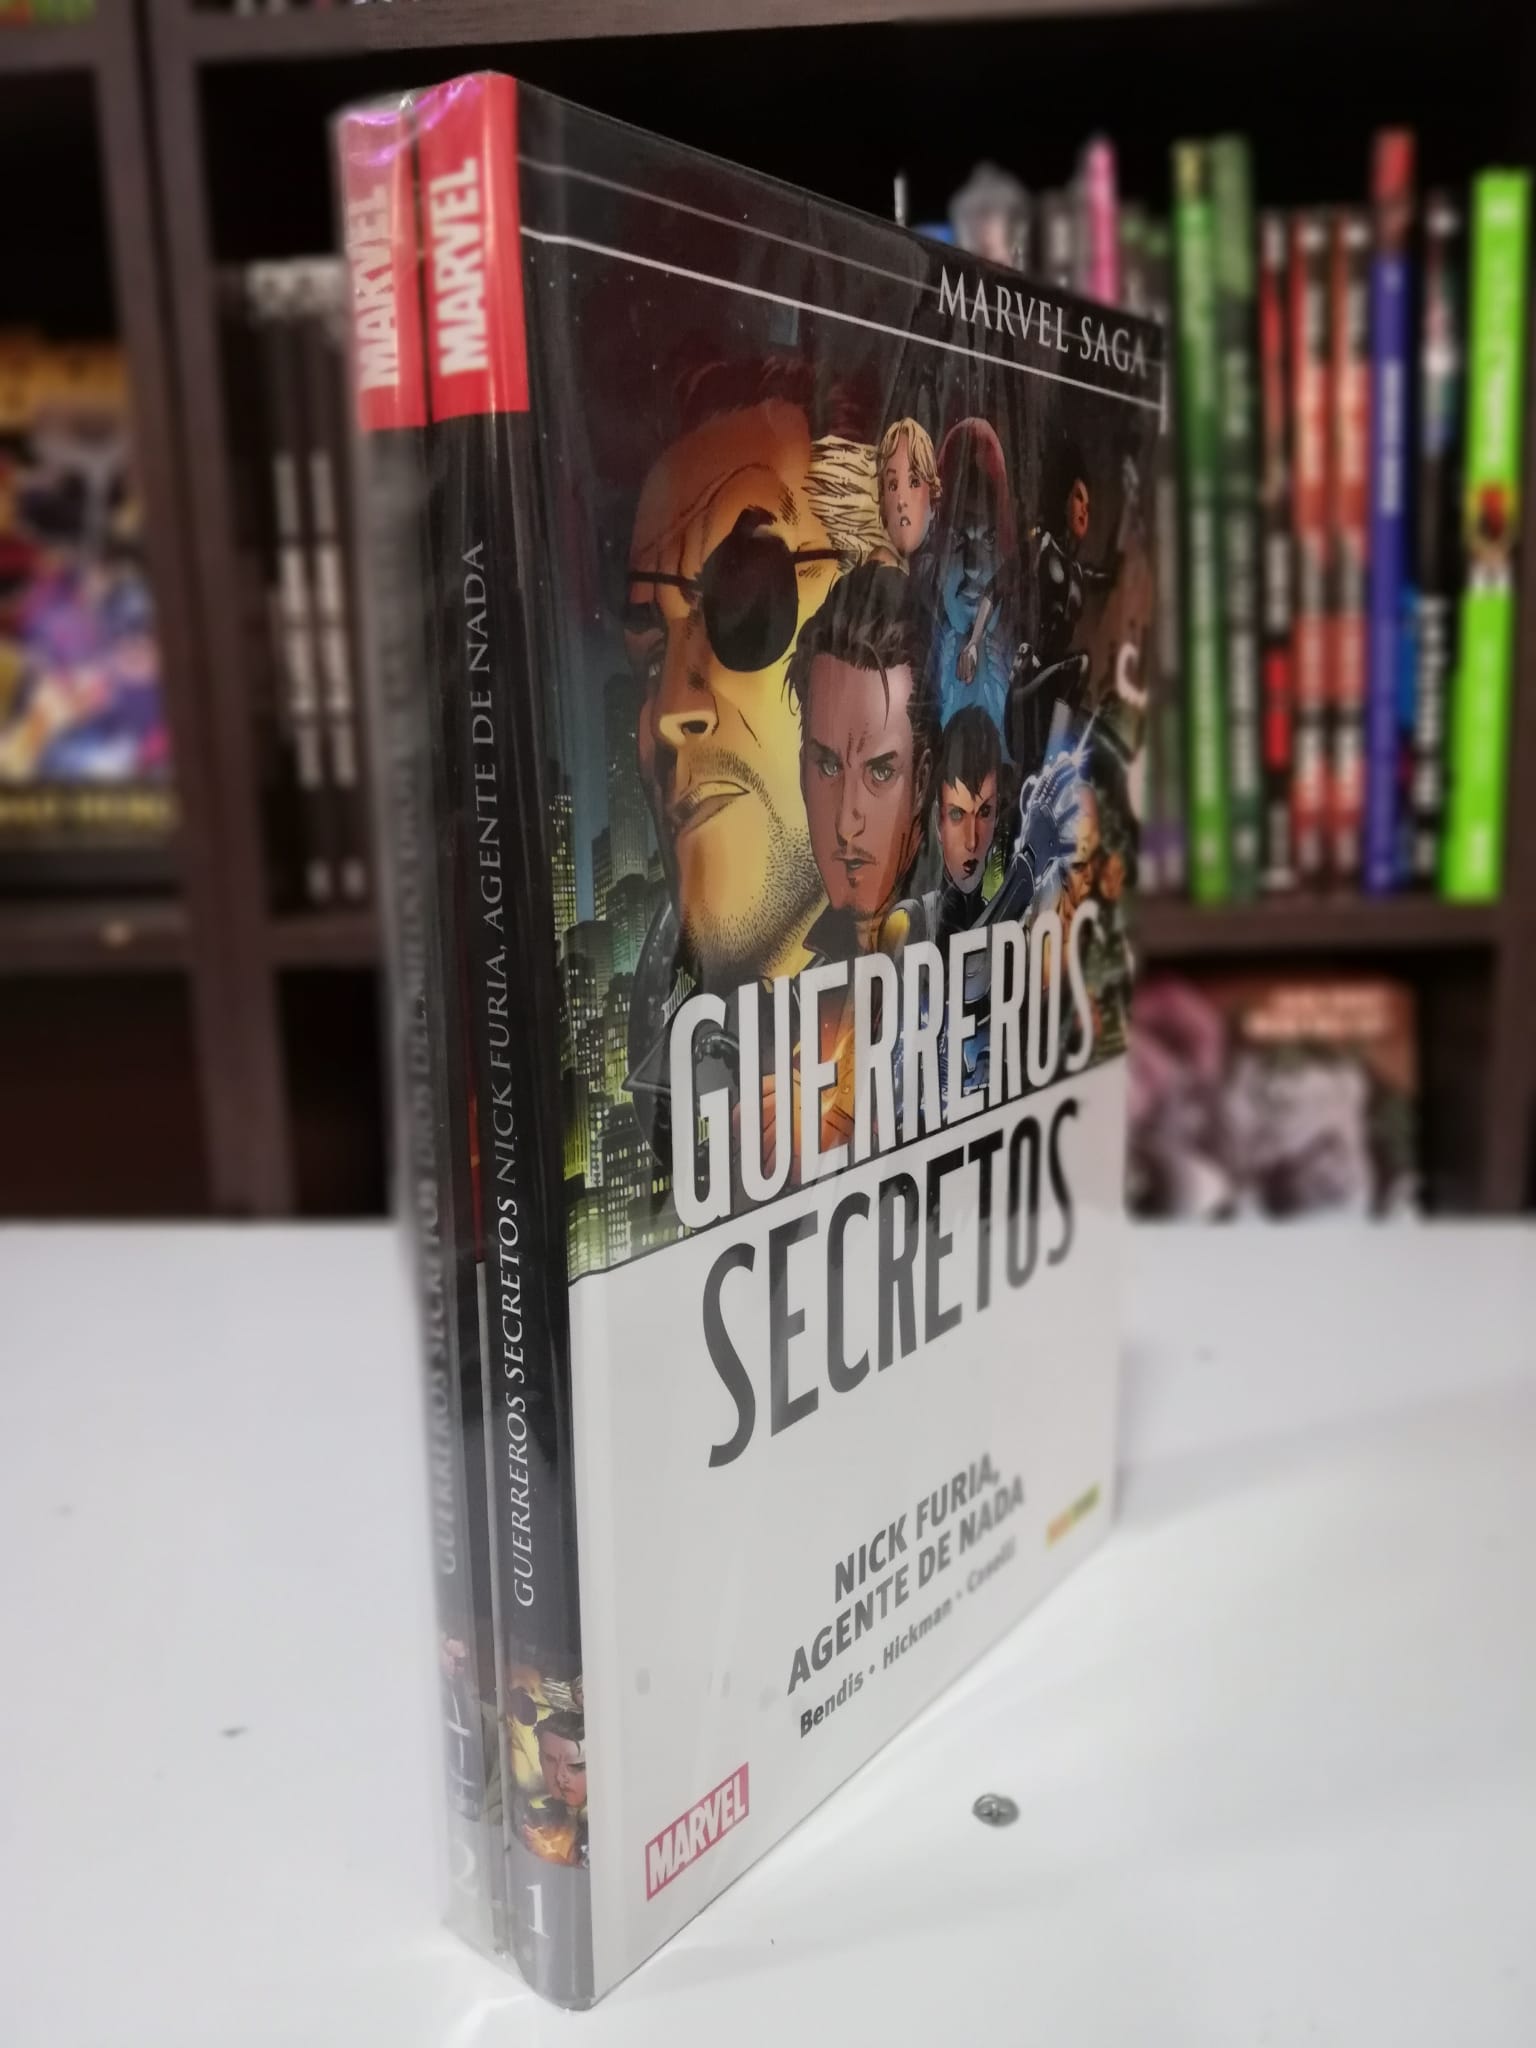 Marvel Saga: Guerreros Secretos Starter Pack (Tomos 1 y 2) ENcuadrocomics ENcuadrocomics